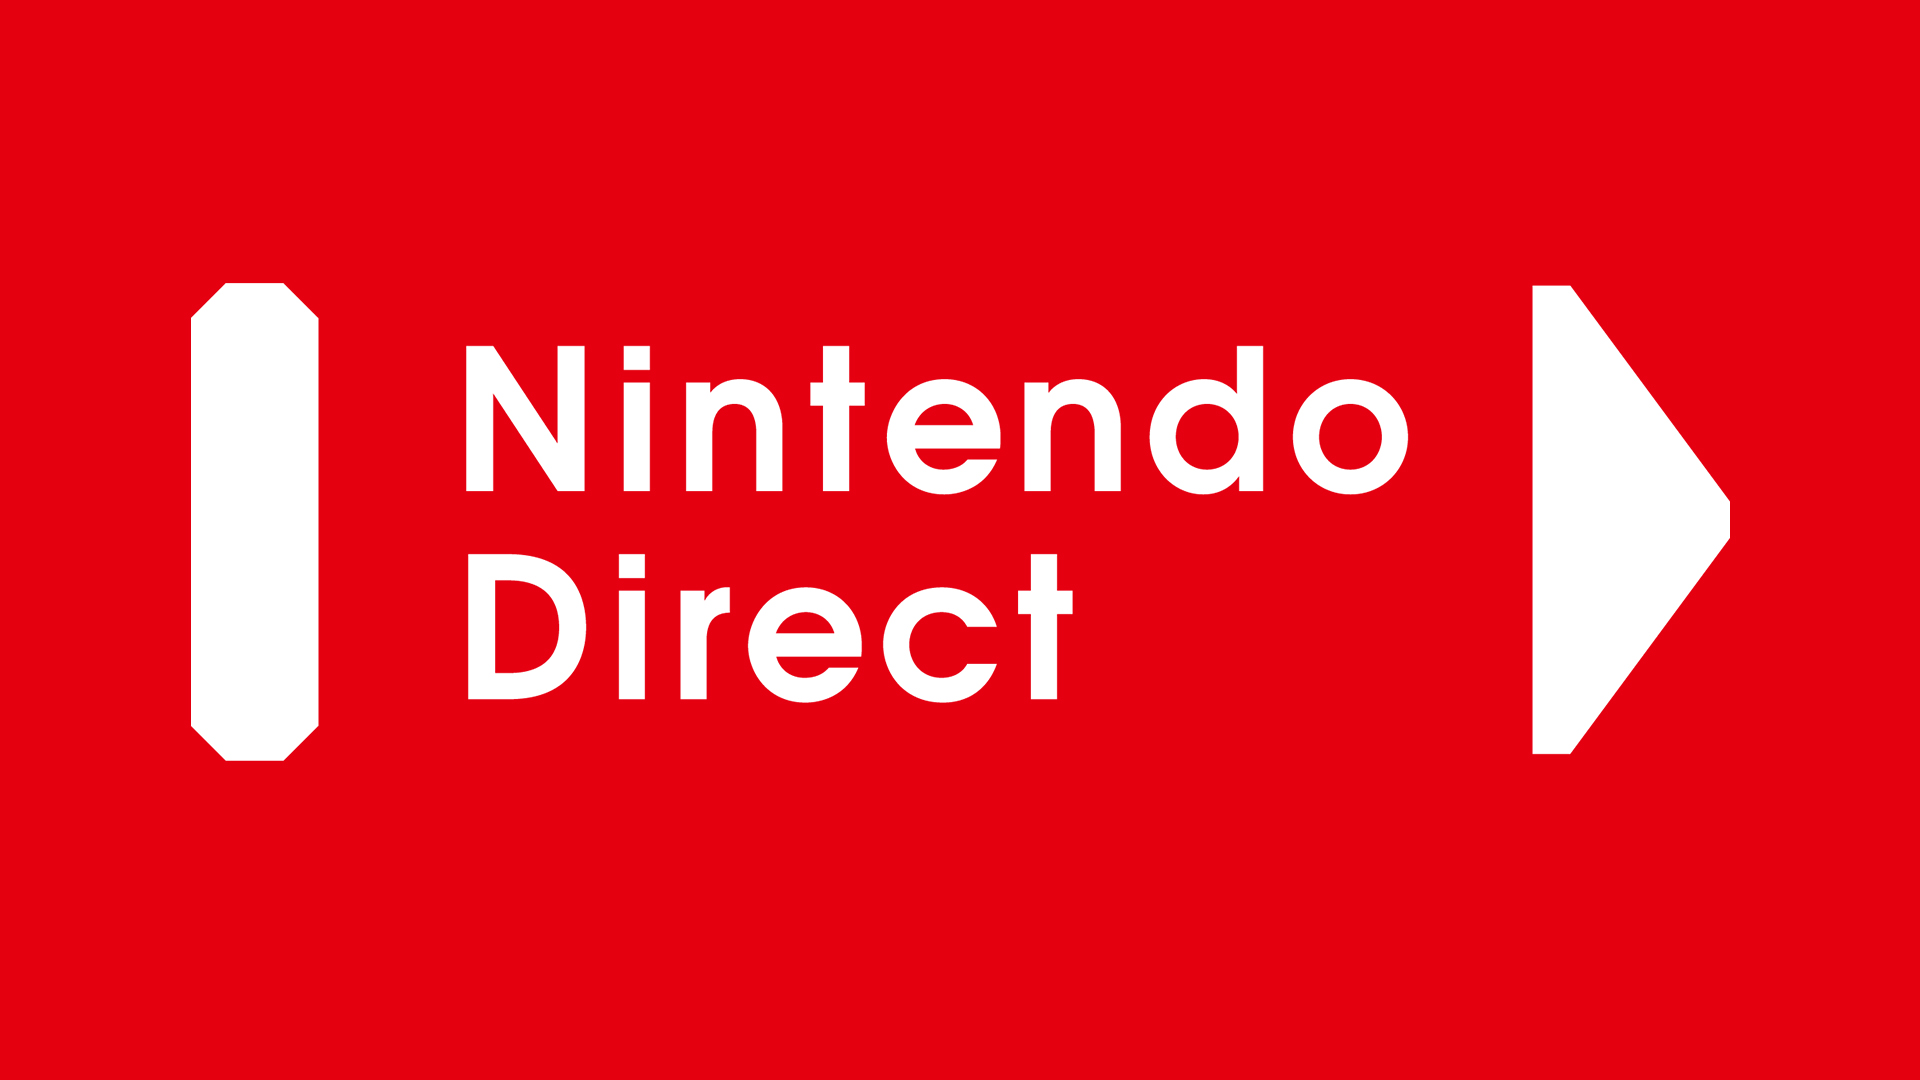 E’ tempo di Nintendo Direct 05/09/19: link diretta e lista giochi in arrivo